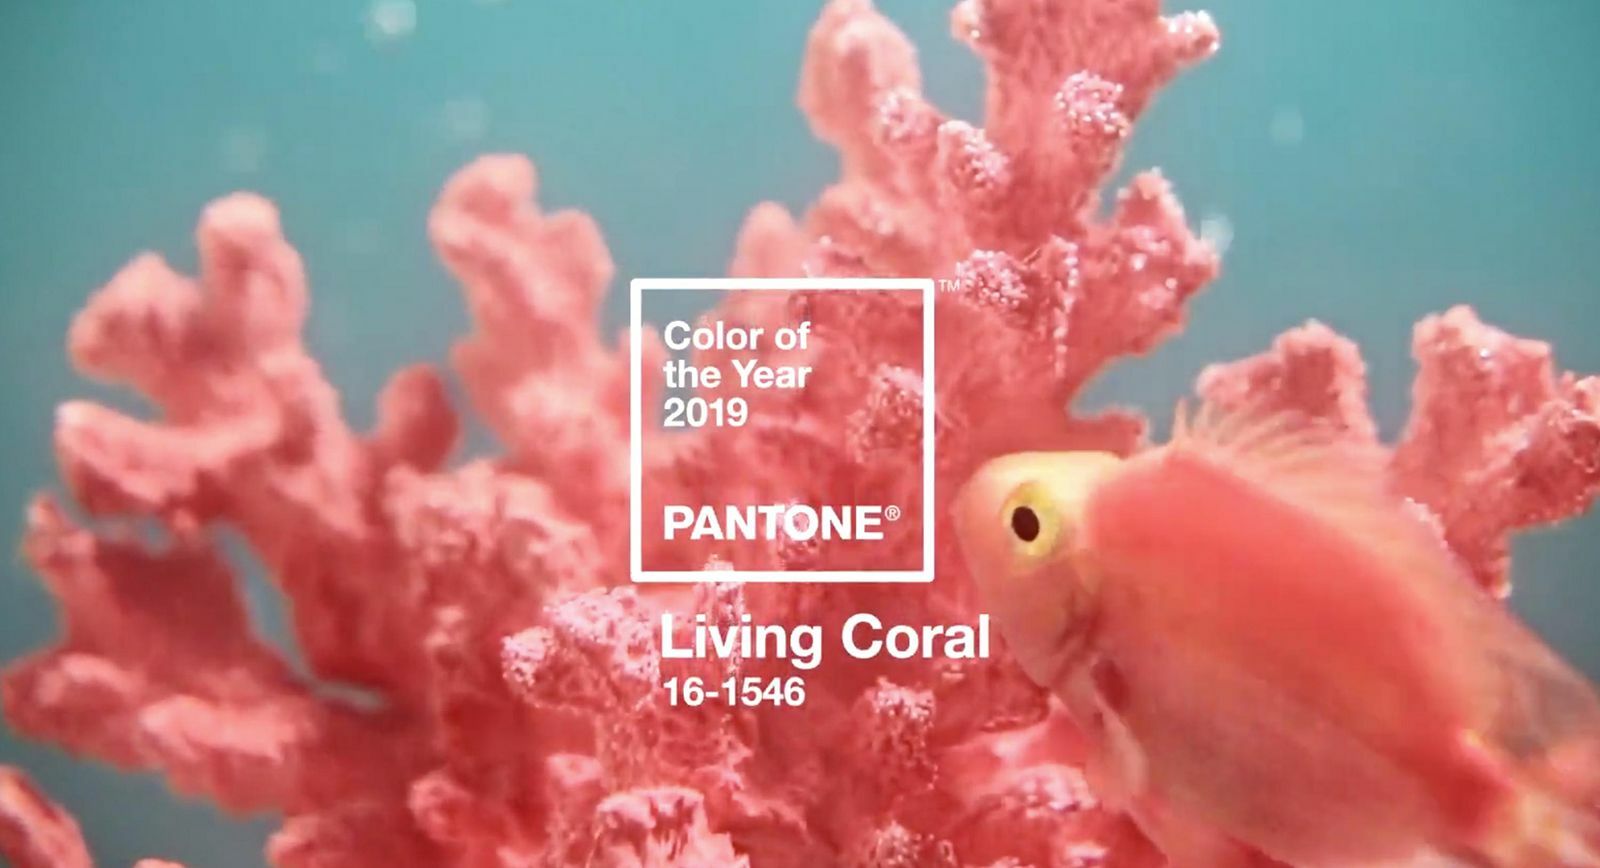 живой коралл назван цветом 2019 года по PANTONE